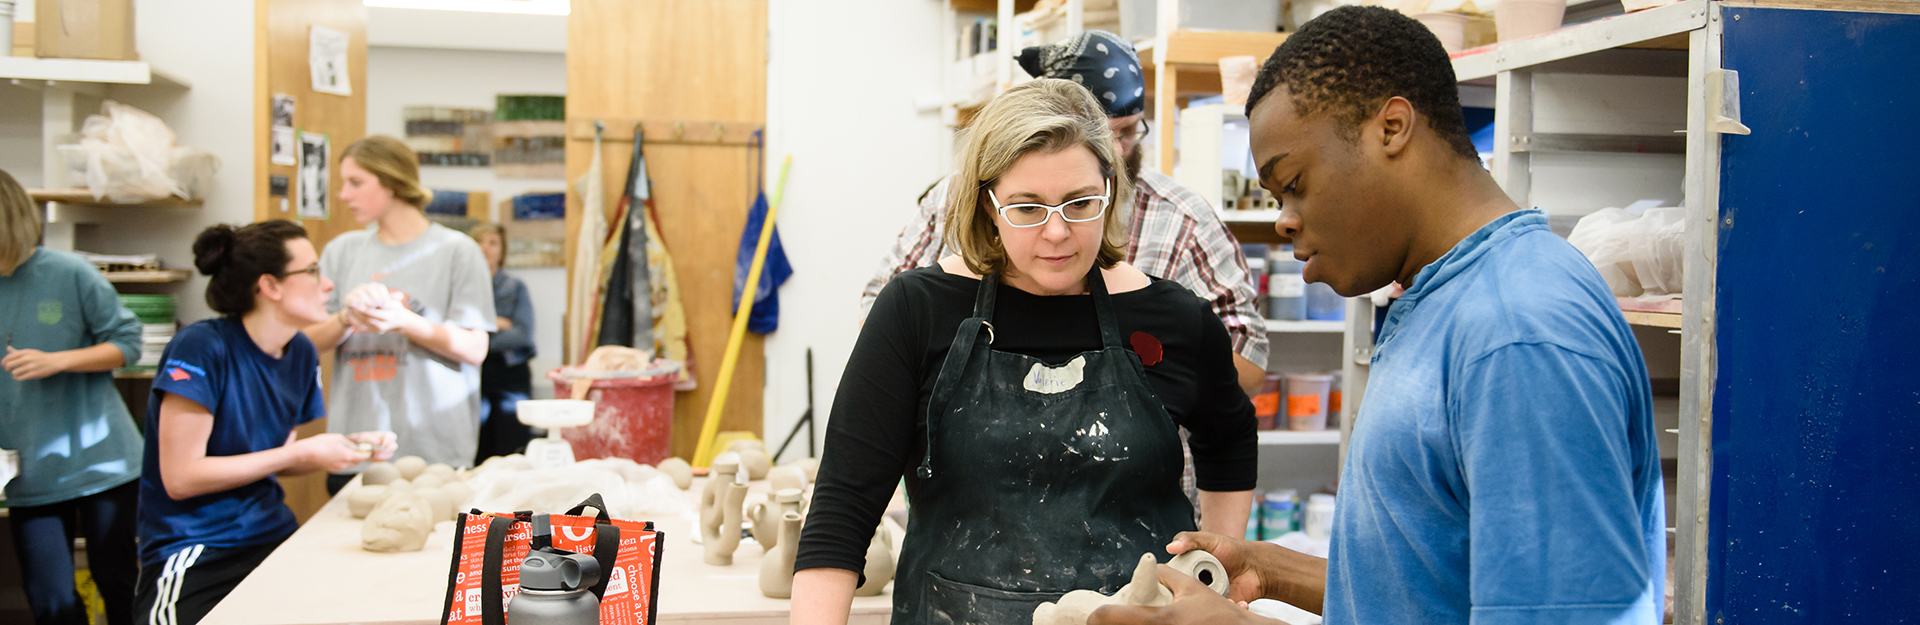 Art professor and student examine ceramic art